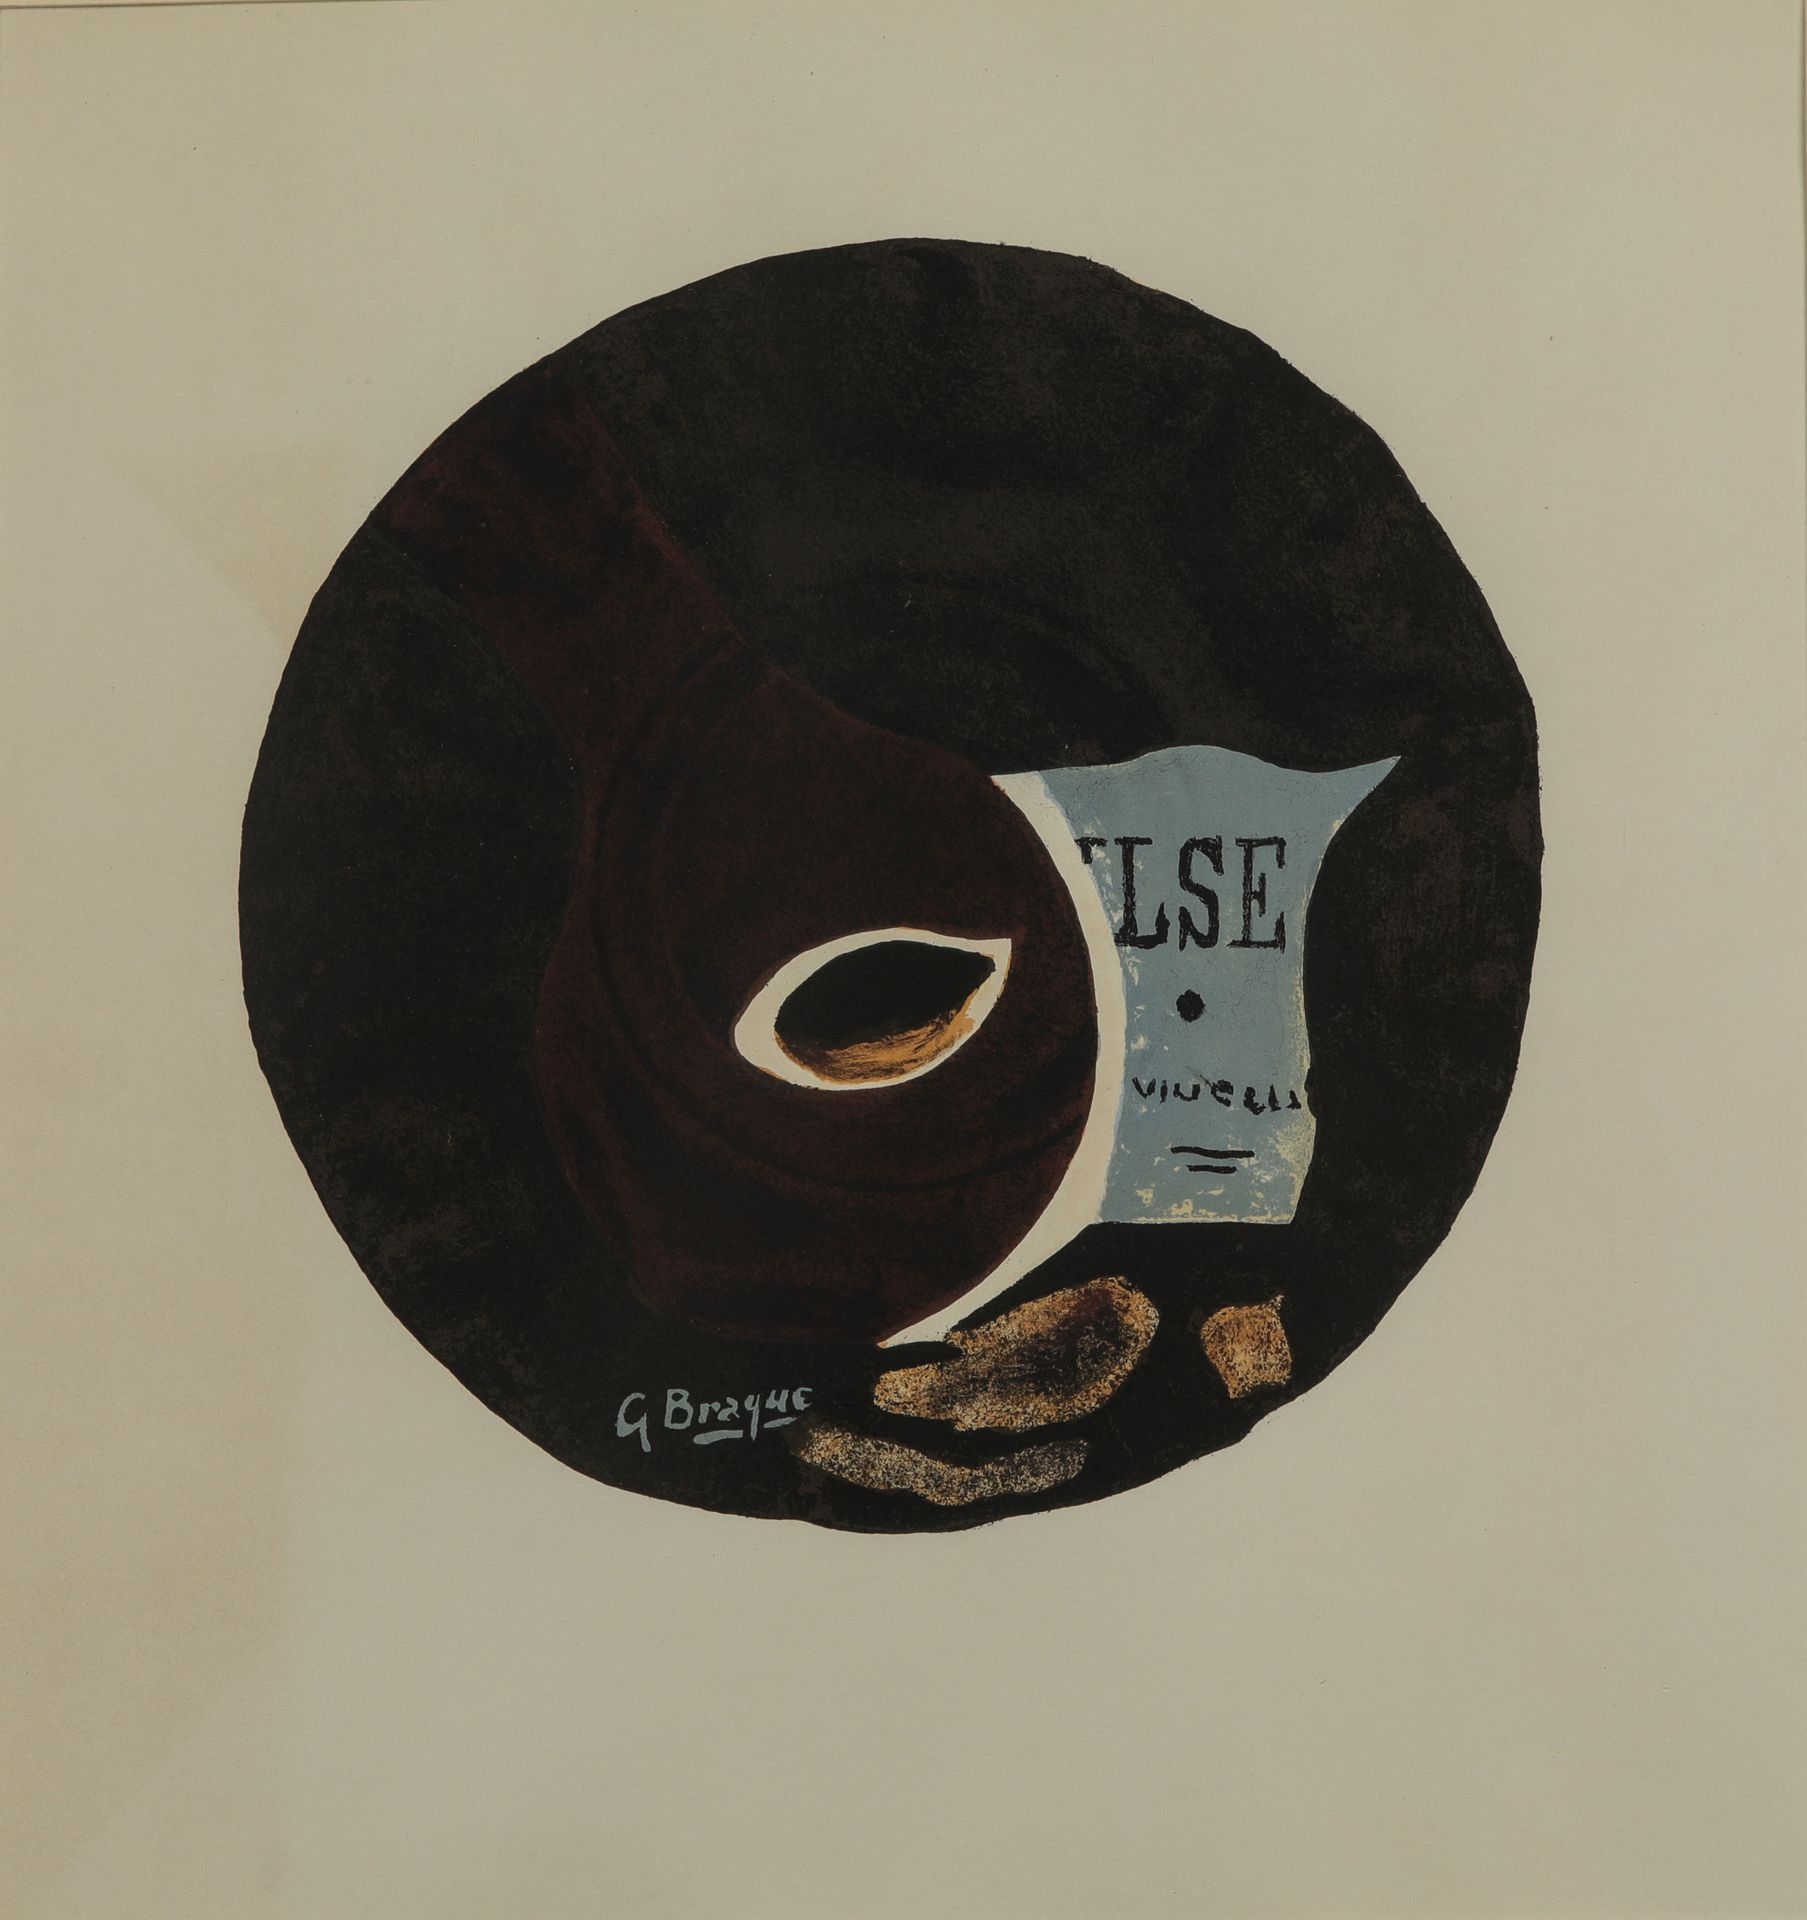 Null 乔治-布拉克 (1882-1963)

VALSE, 1961

纸上石版画，并在版上签名

麦格特画廊

40 x 37厘米